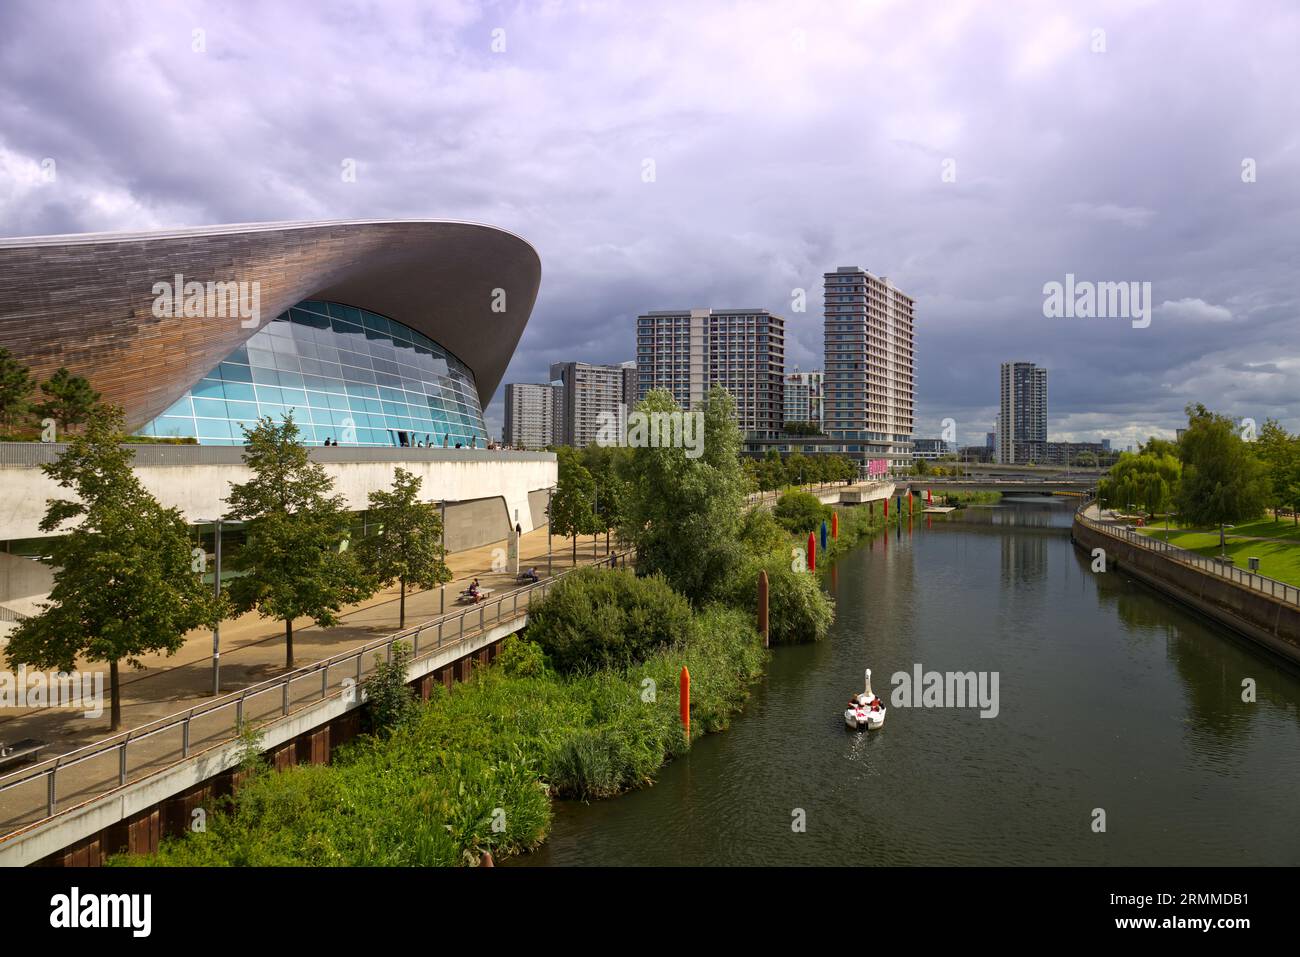 London Aquatics Centre au Queen Elizabeth Olympic Park, Stratford, Londres, Royaume-Uni Banque D'Images